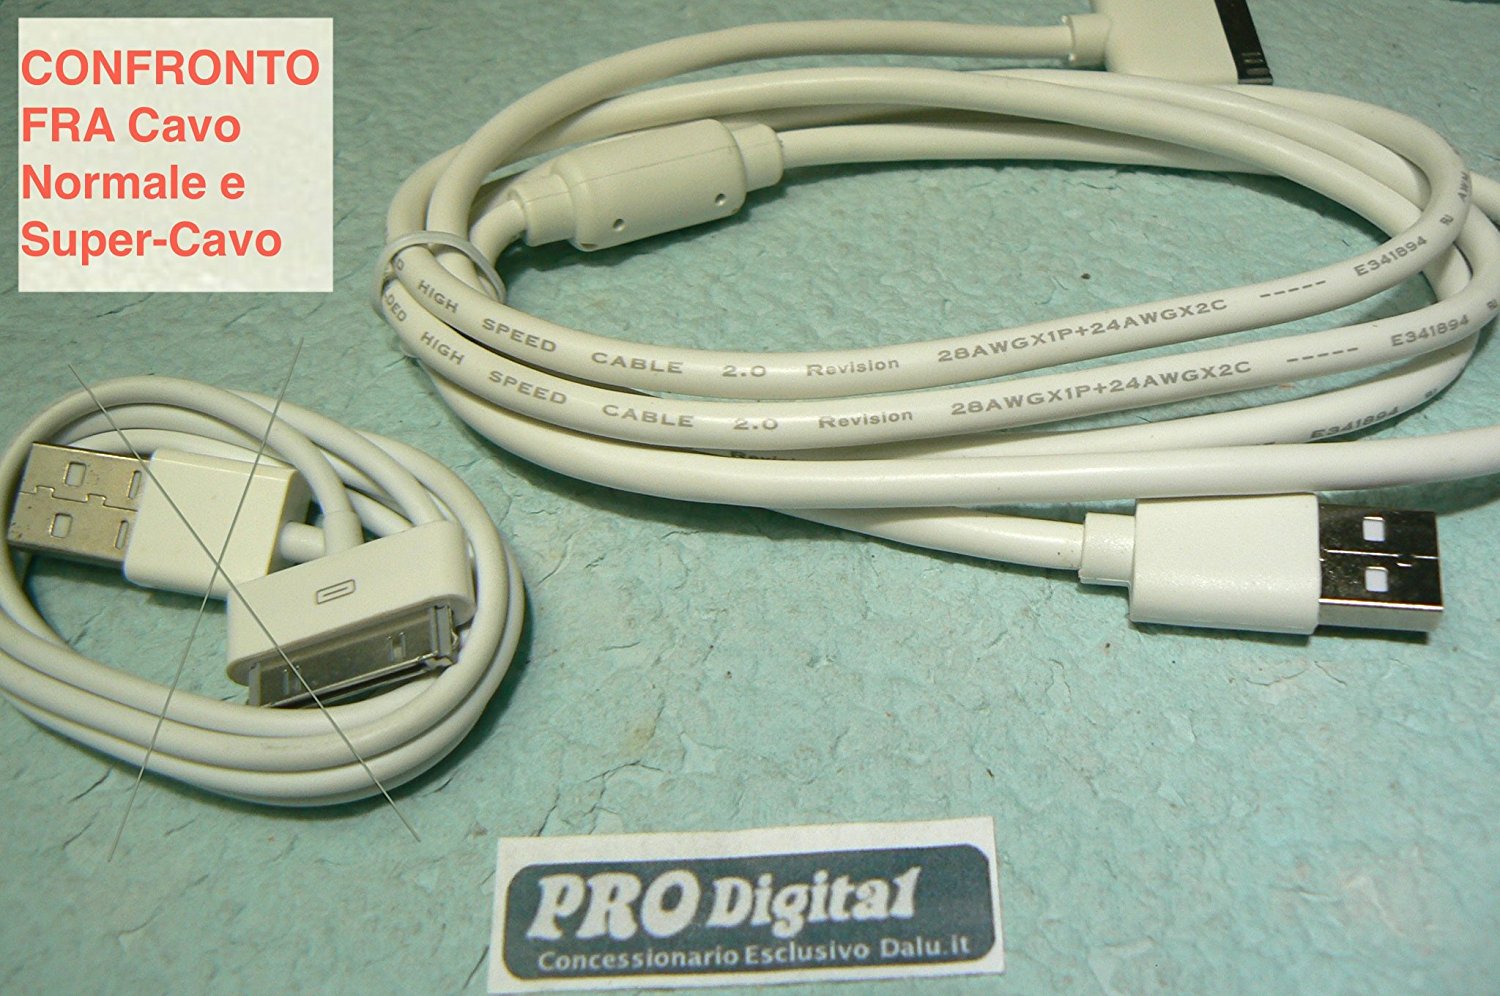 ProDigital USB CABLE IPHONE 4 E IPAD